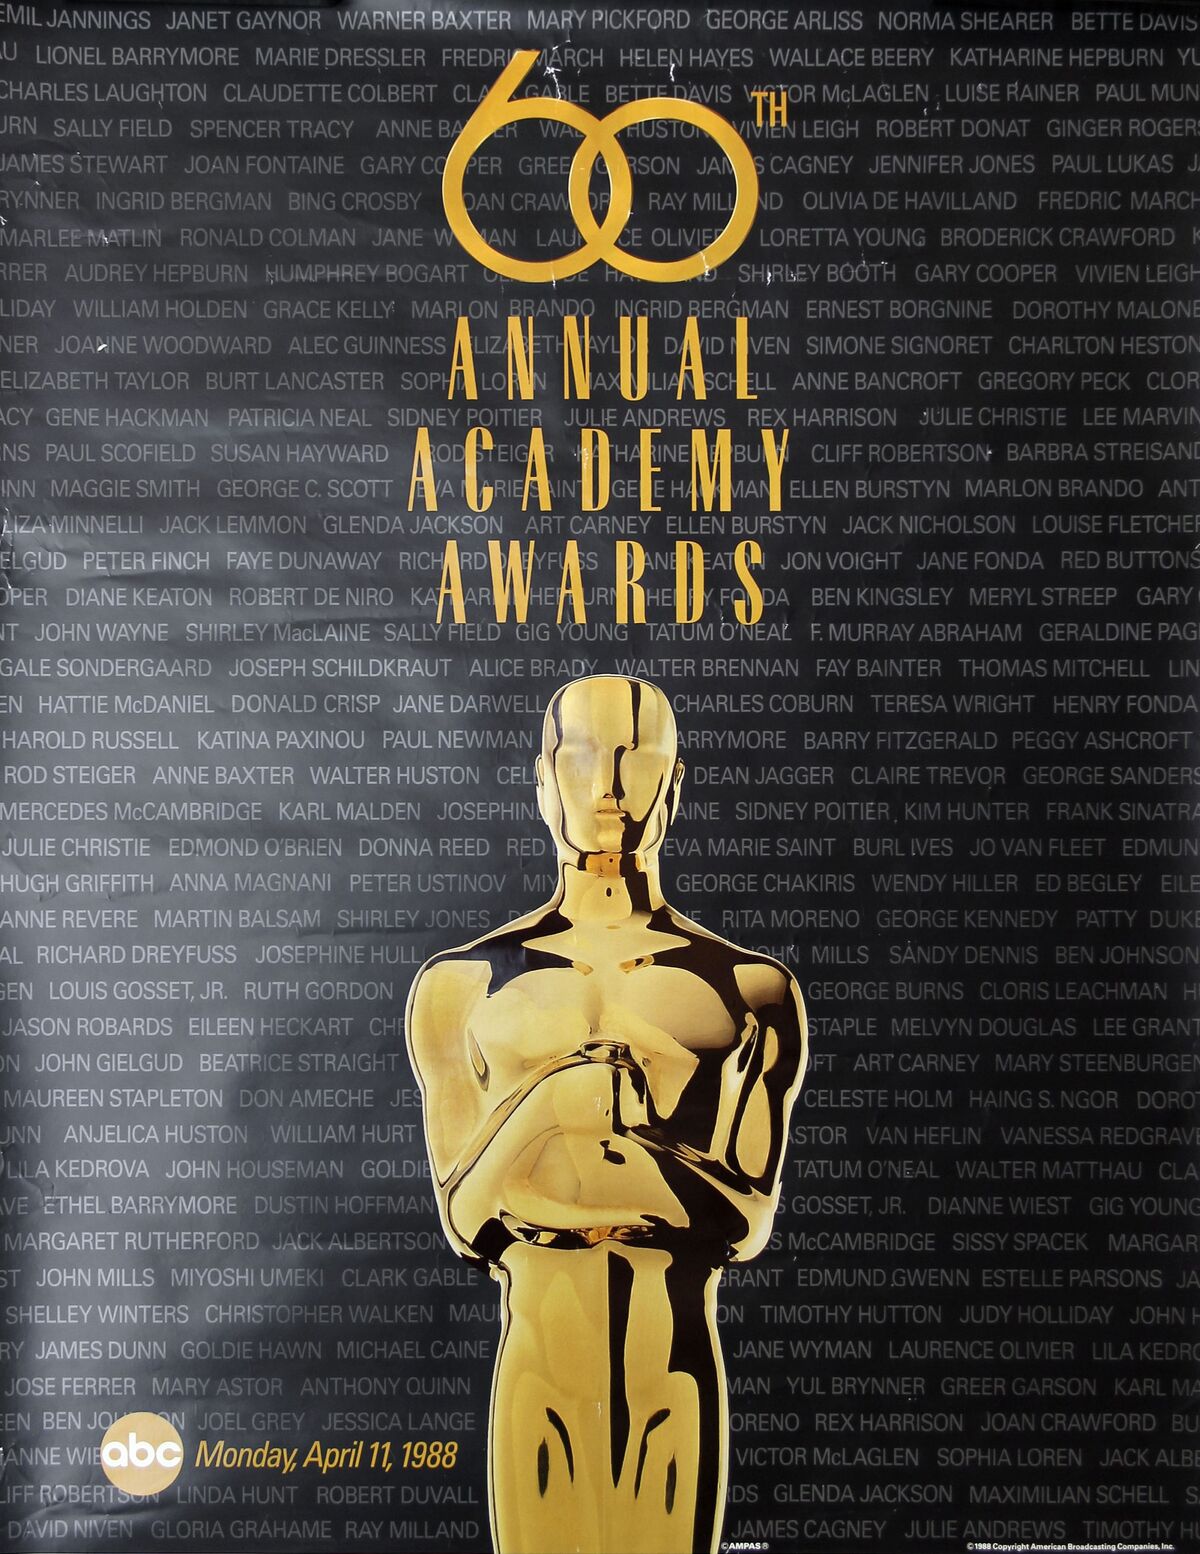 Daniel Day-Lewis, Oscars Wiki